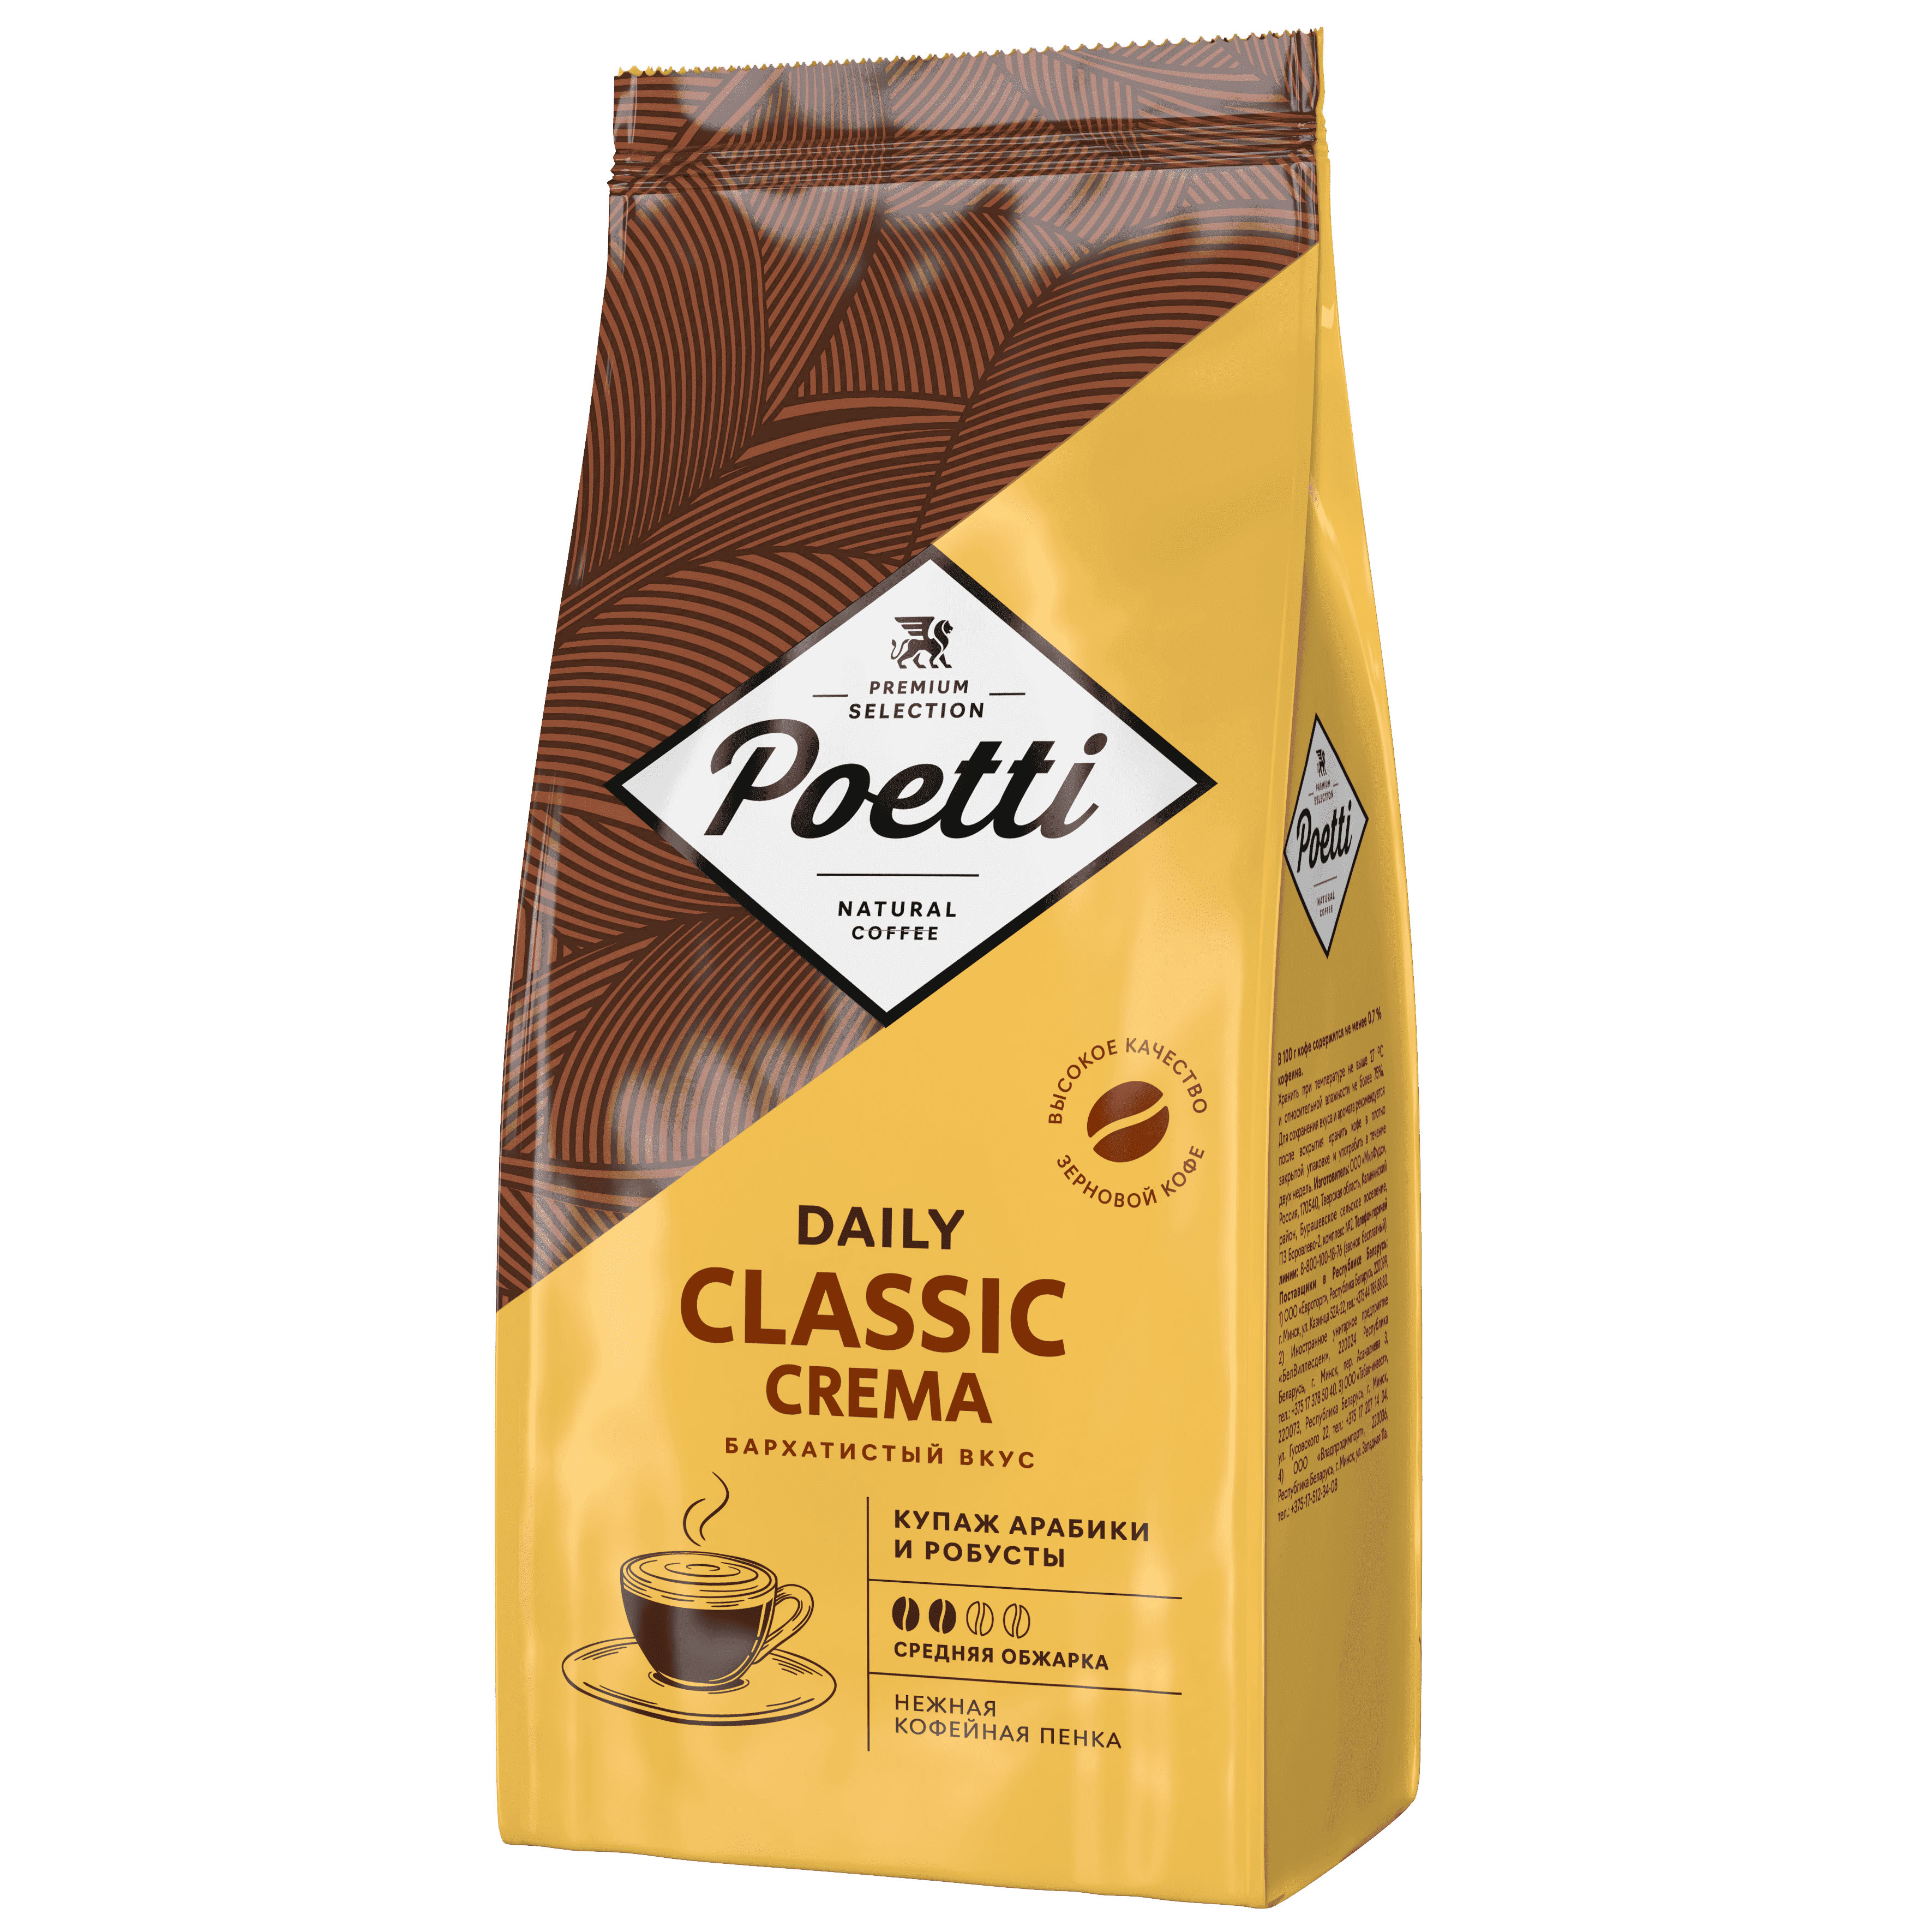 Кофе Poetti Classic Crema 1 кг кофе в зернах poetti daily classic crema 1 кг